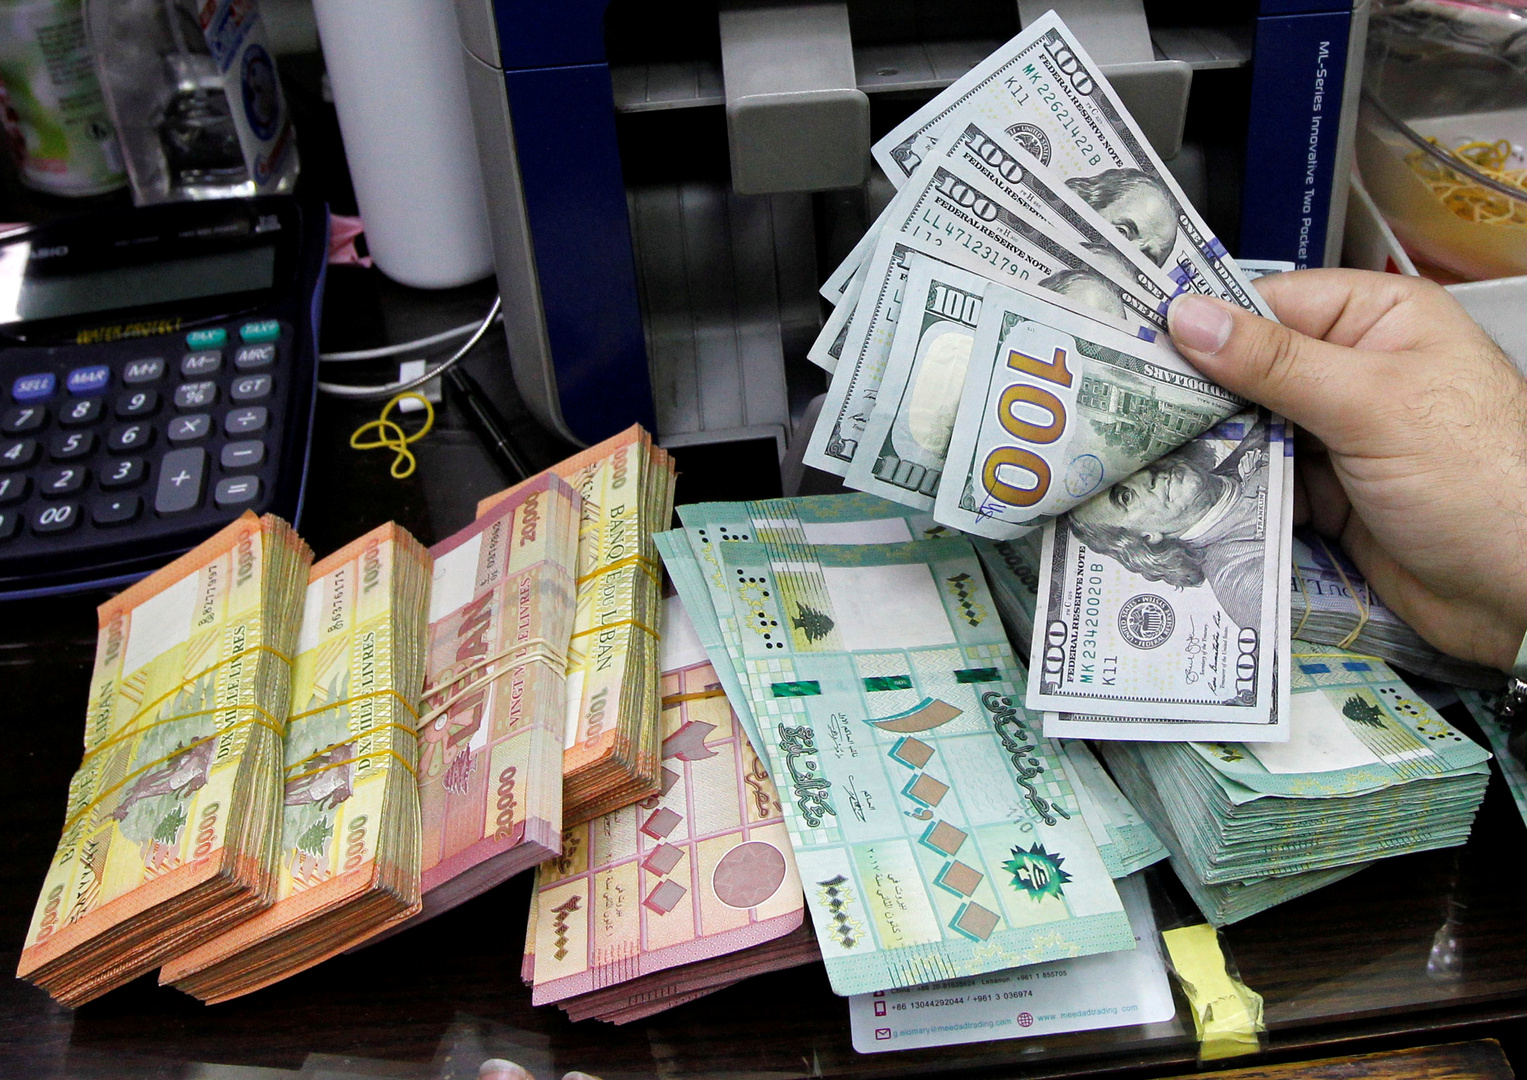 الحكومة اللبنانية توافق على إجراء تدقيق جنائي في البنك المركزي